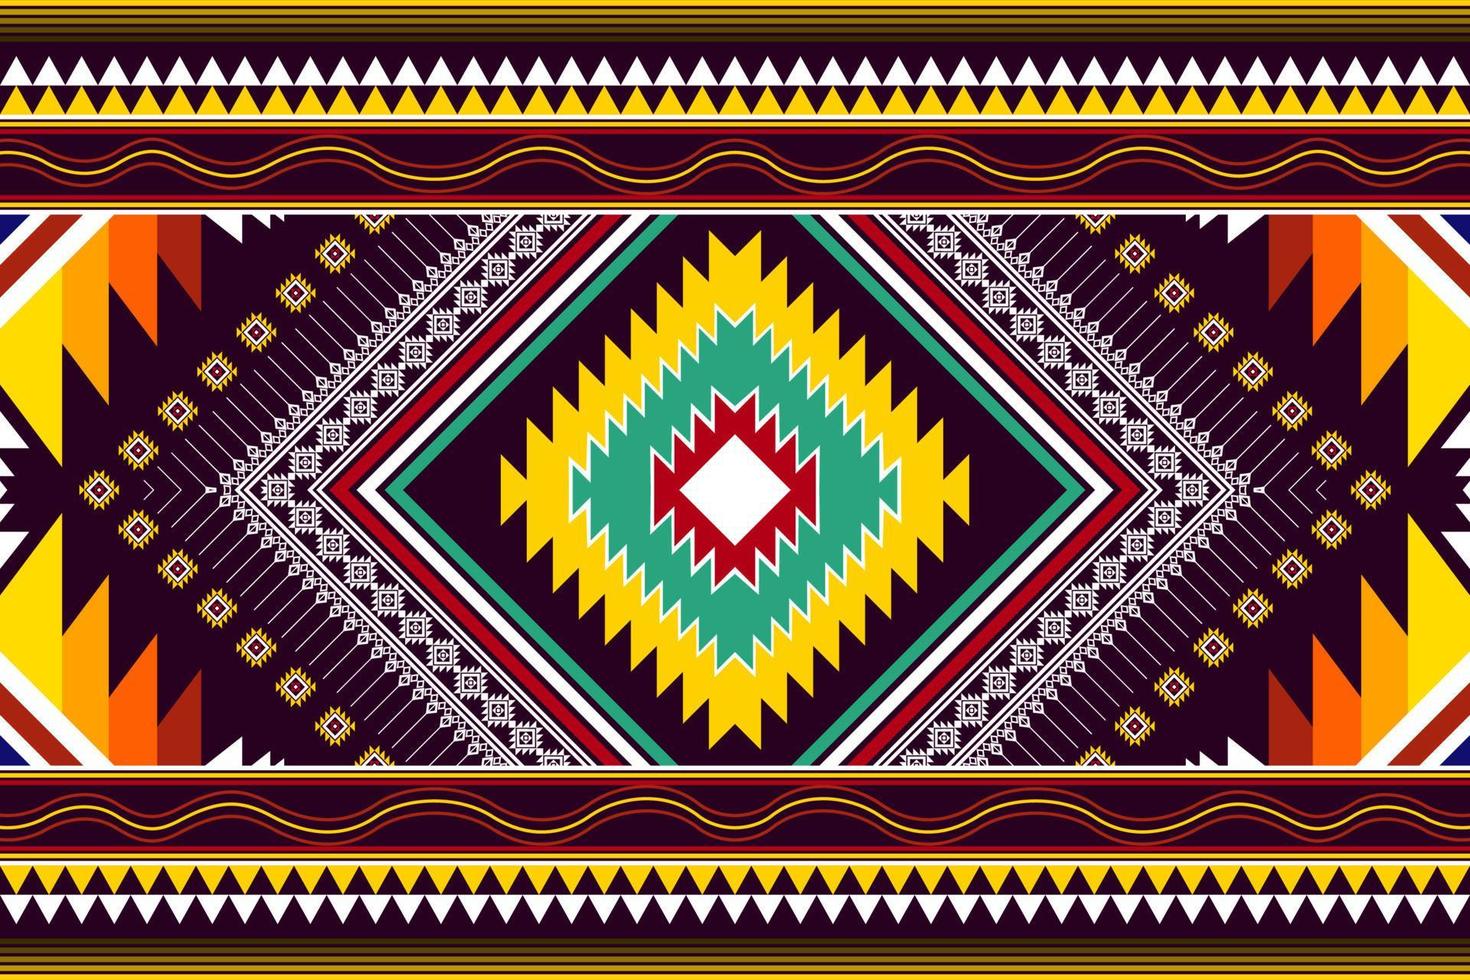 conception de motif ethnique abstrait géométrique. tapis en tissu aztèque ornement mandala ethnique chevron textile décoration papier peint. fond d'illustrations vectorielles de broderie traditionnelle indigène boho tribal vecteur